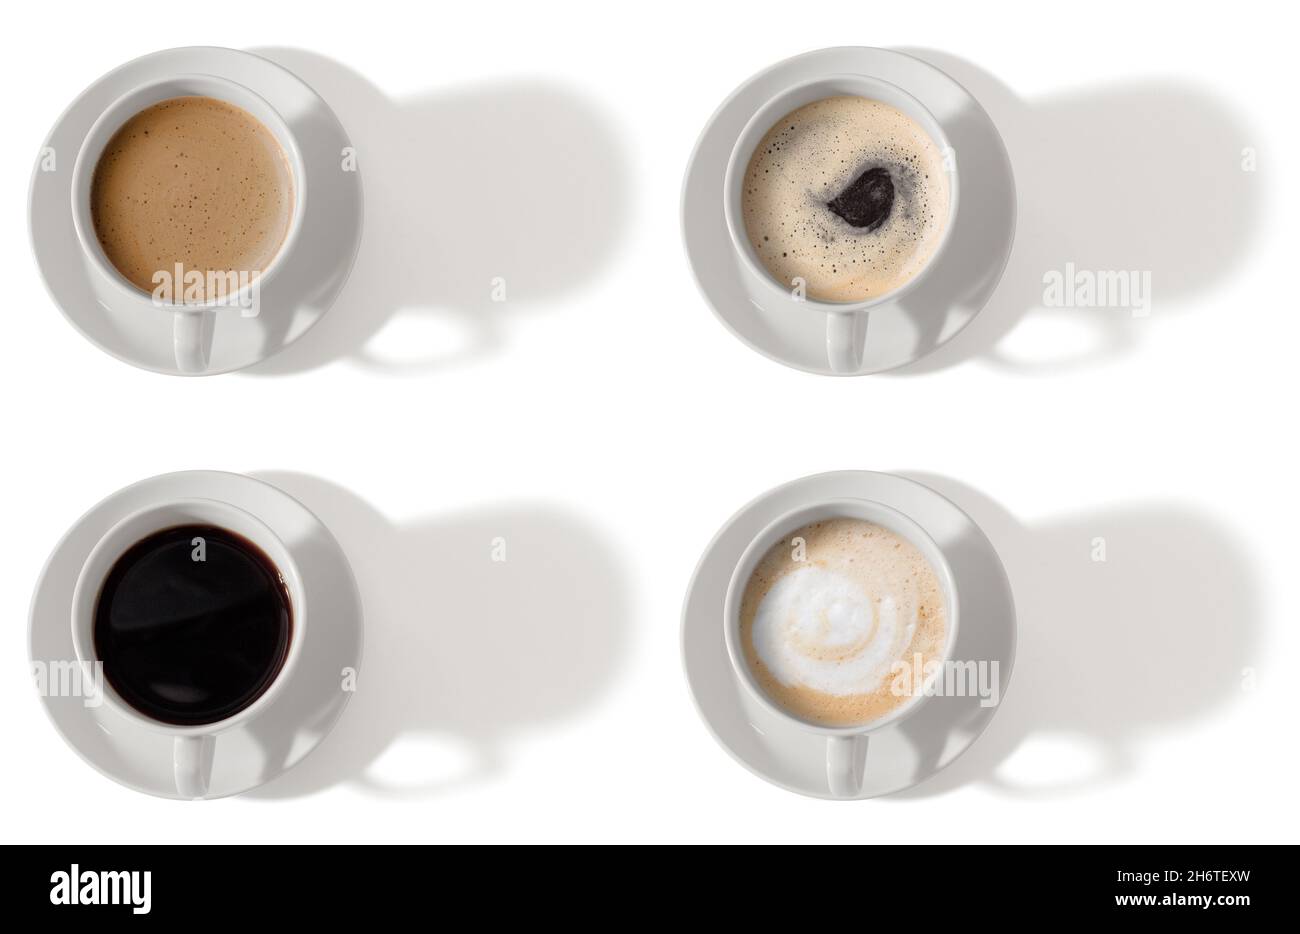 Vista superior de varias tazas de café con sombras aisladas Foto de stock